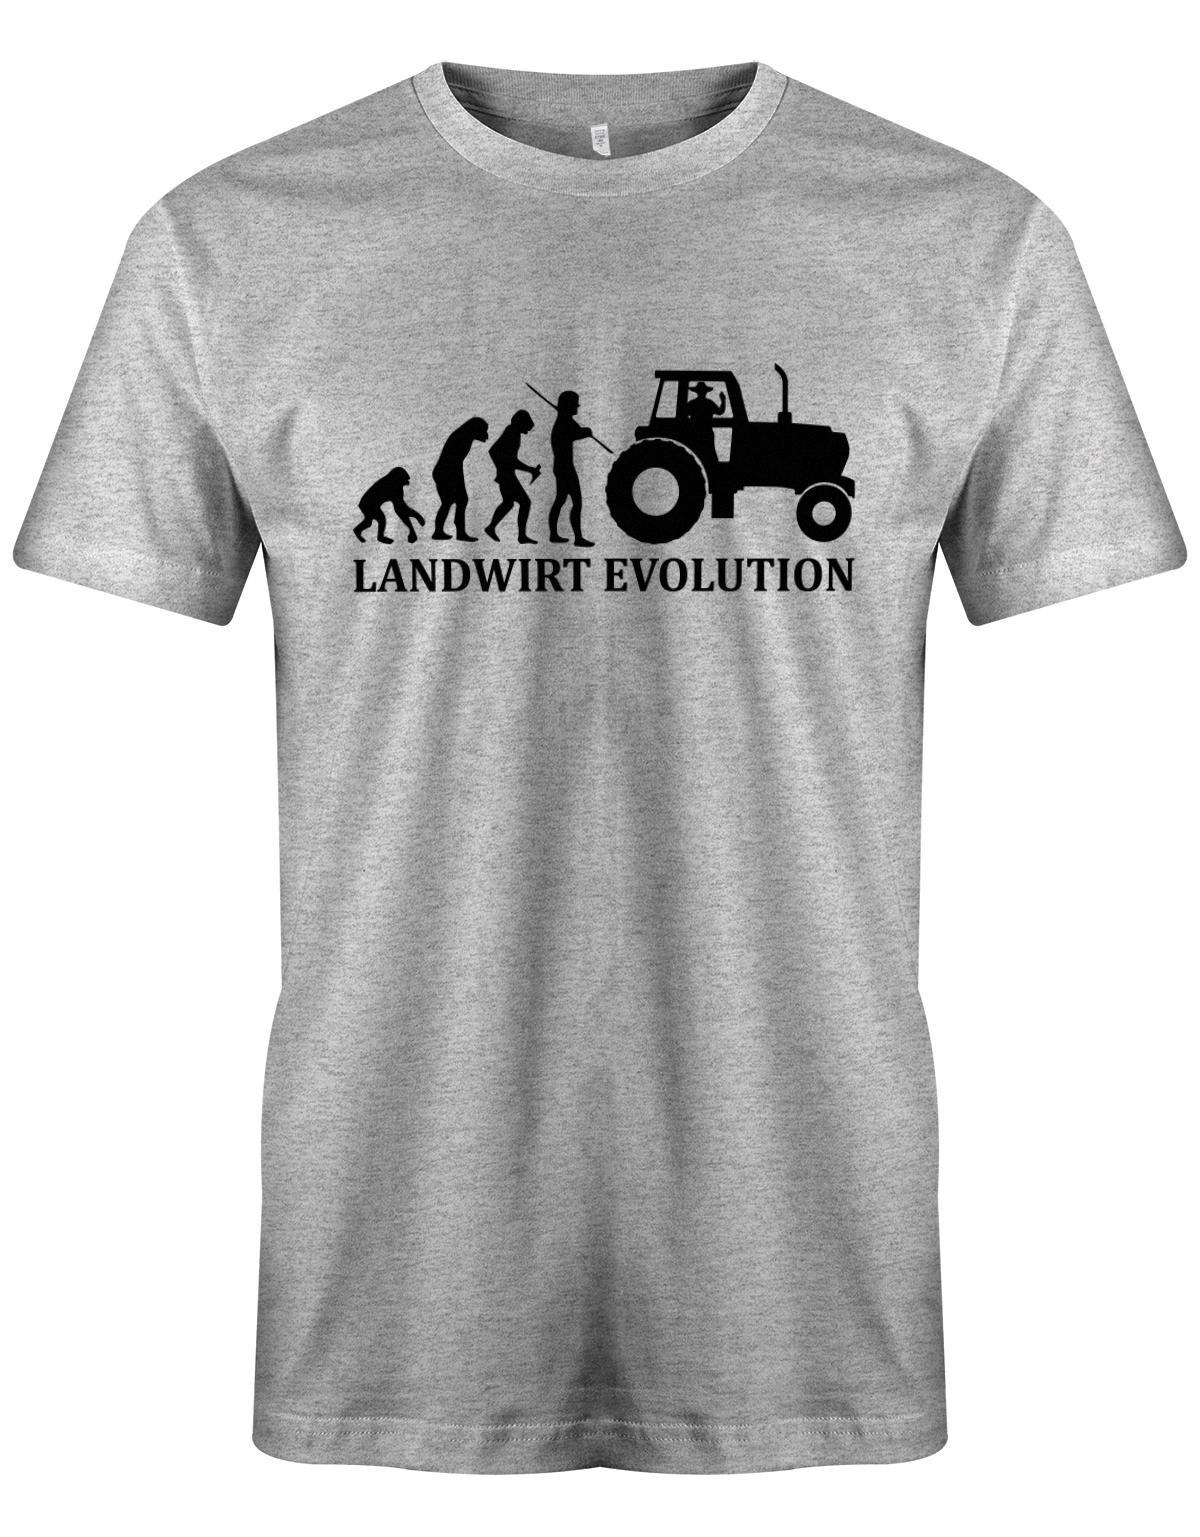 Landwirtschaft Shirt Männer - Landwirt Evolution Grau